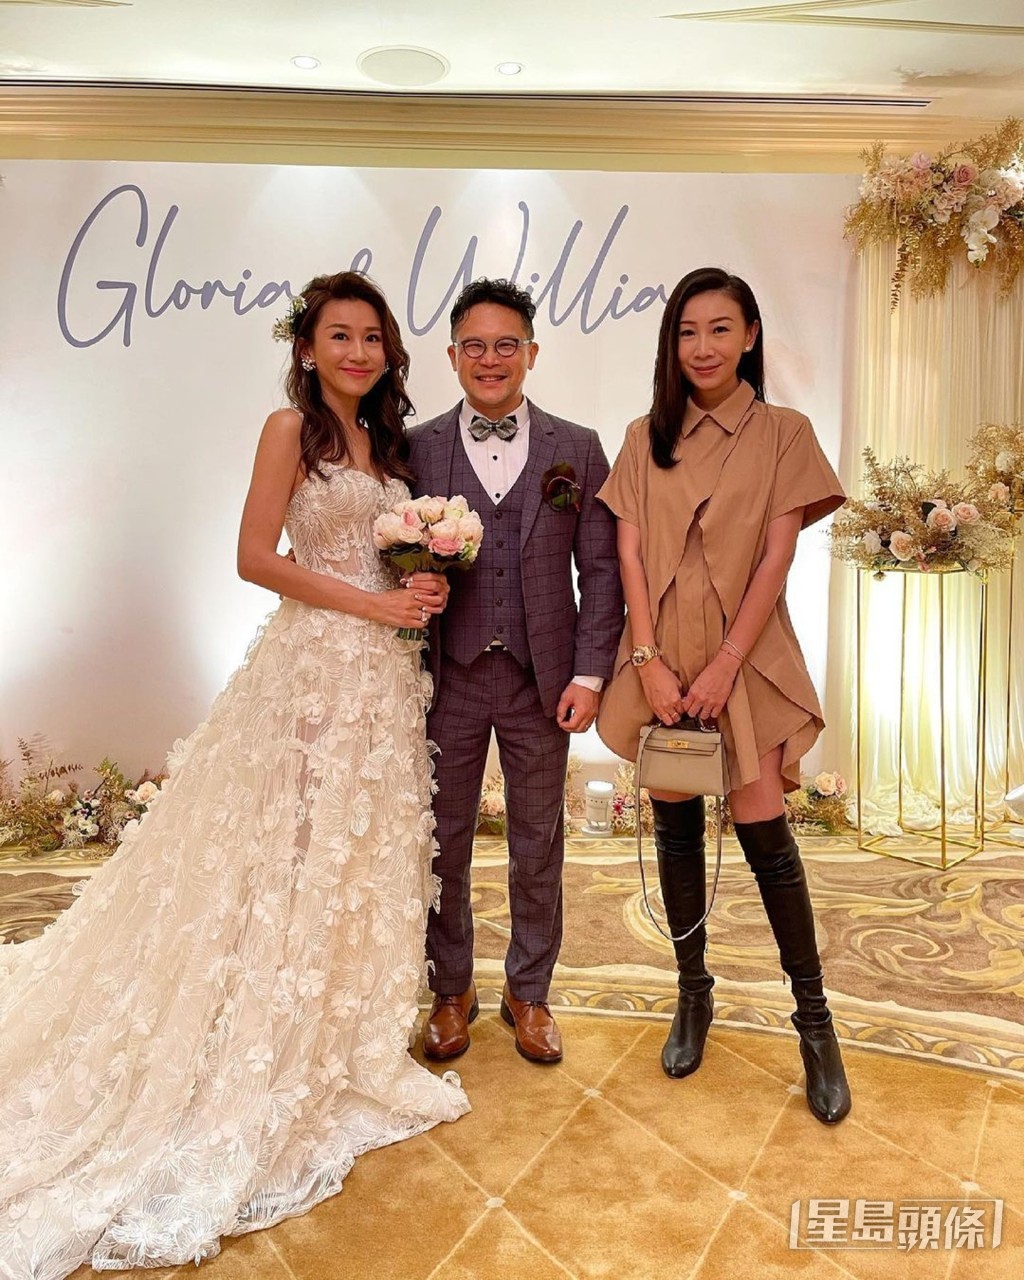 前Cookies成員陳素瑩（Gloria）婚宴2021年出嫁，楊愛瑾與吳雨霏同場沒有合照。